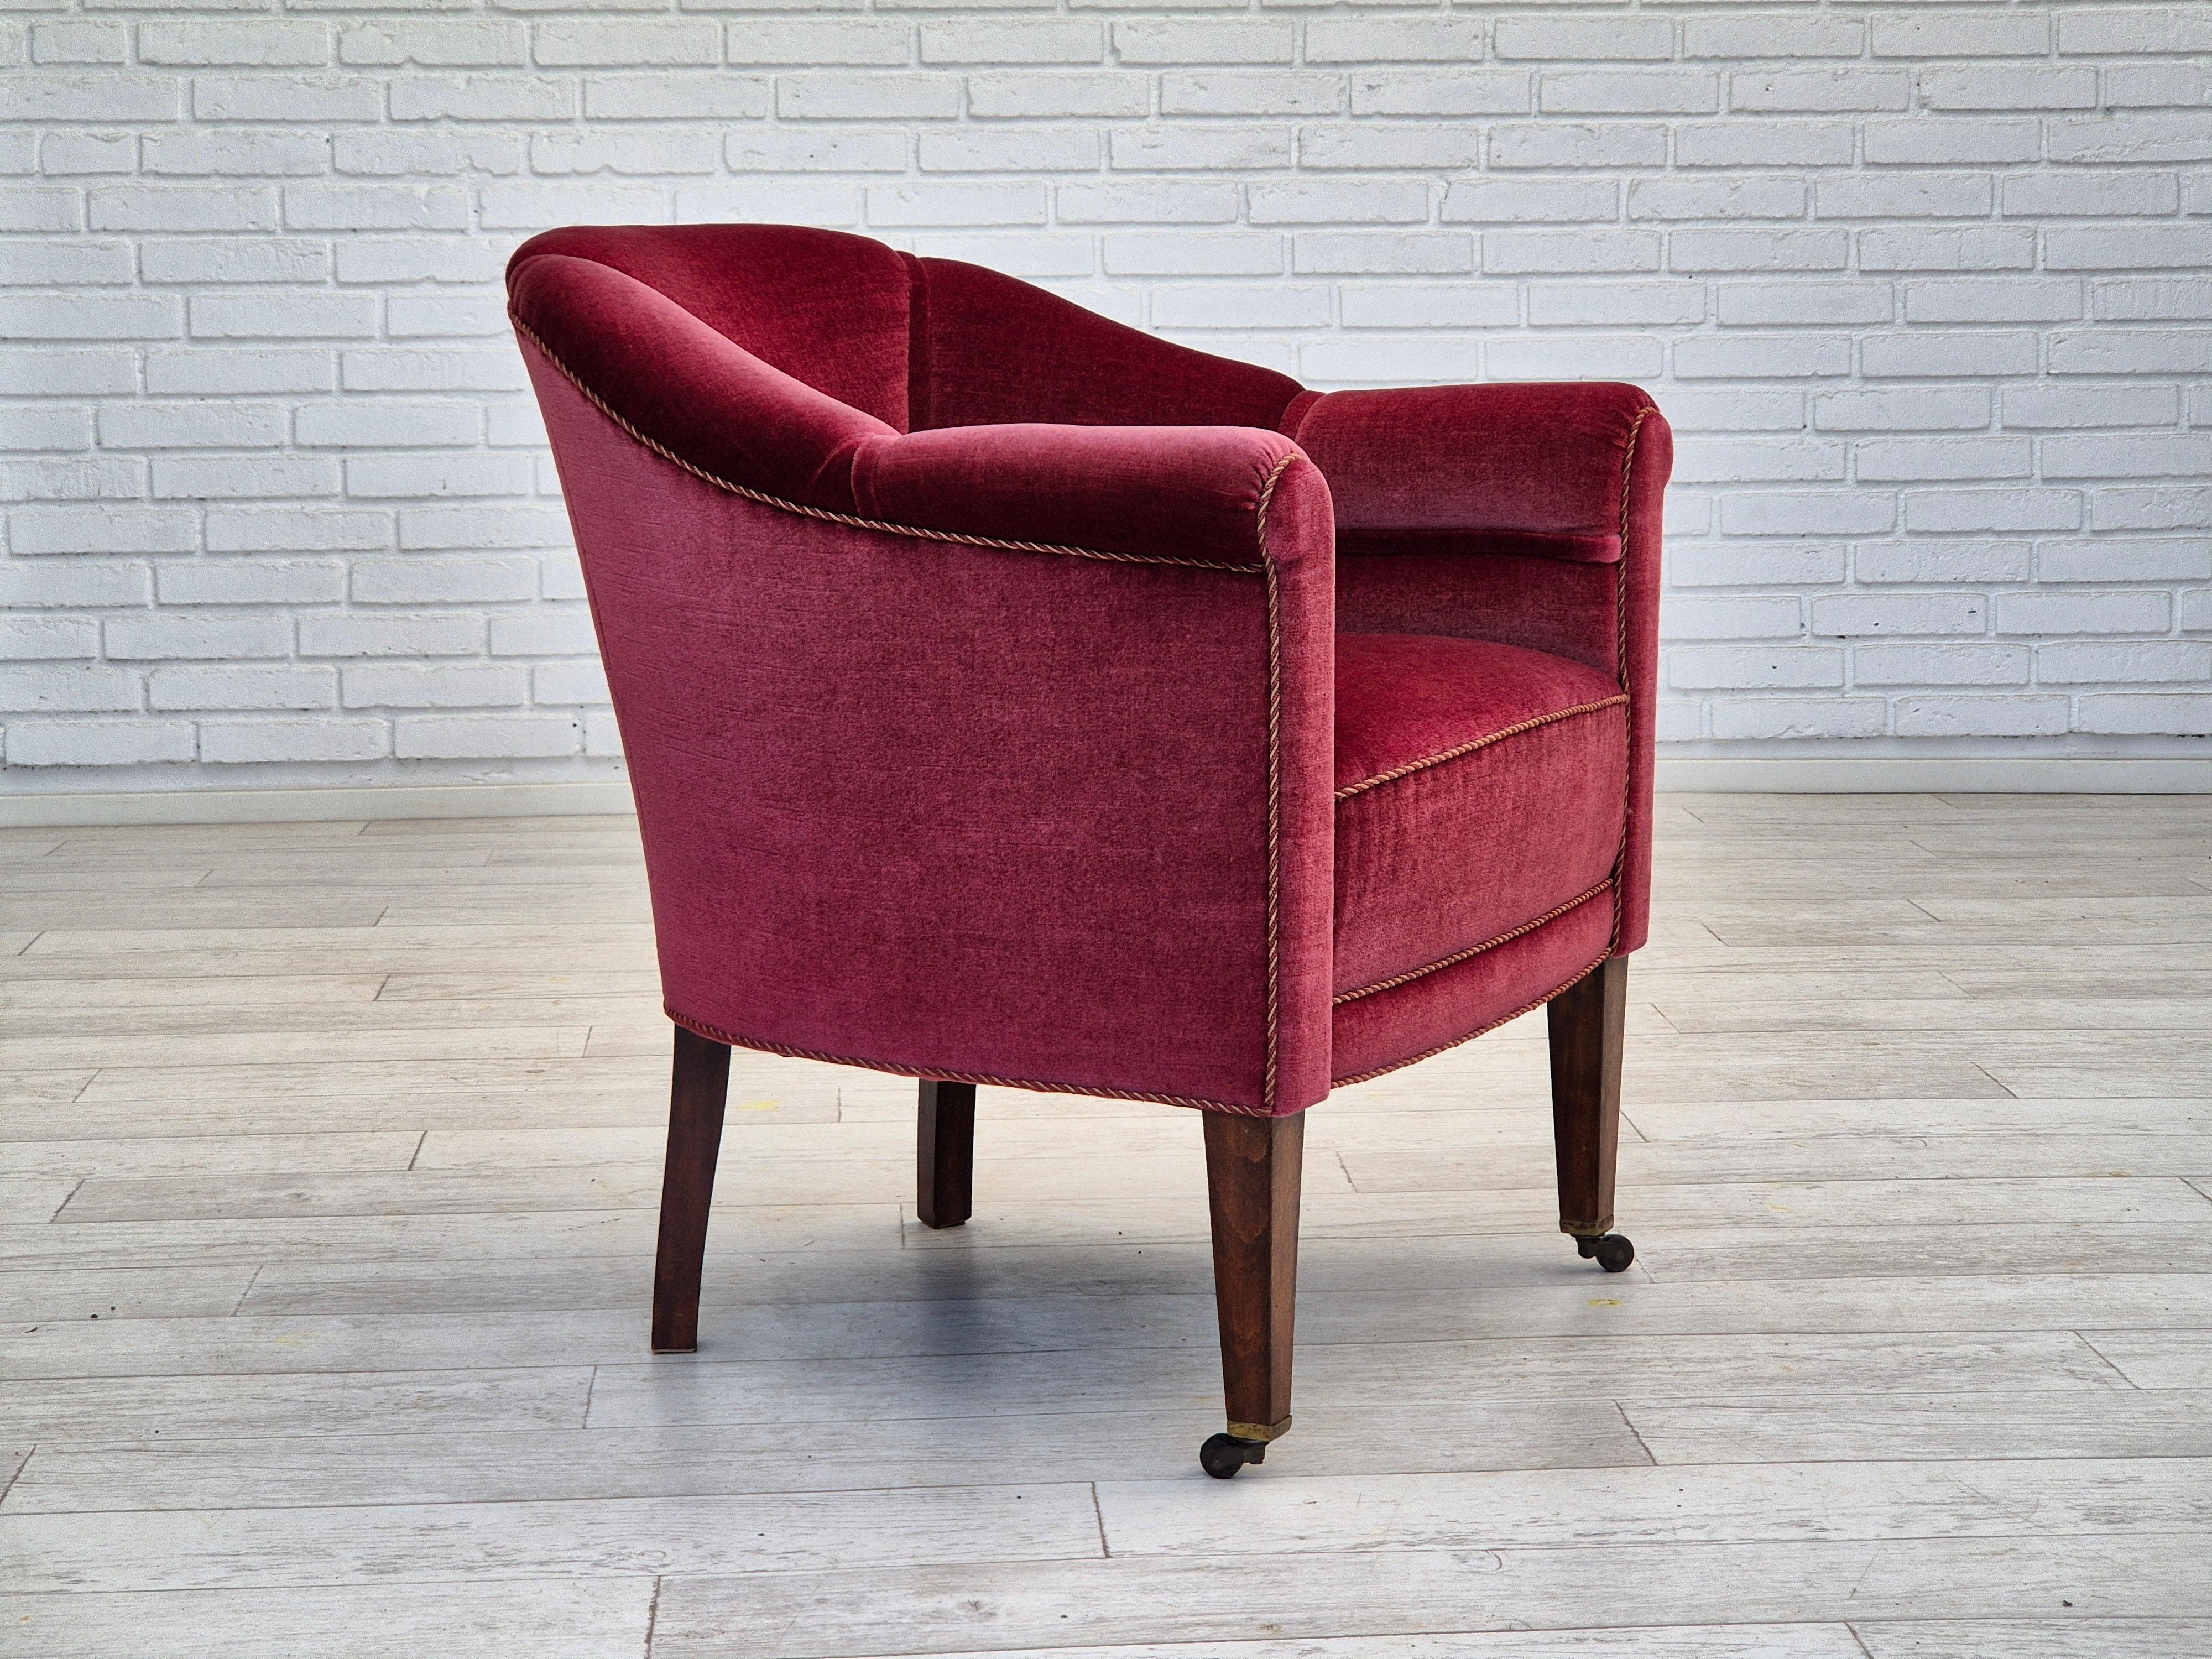 Chaise longue danoise des années 1950 en très bon état d'origine : pas d'odeur ni de tache. Meuble en velours rouge, pieds en bois de frêne avec roues en laiton sur les pieds avant. Ressorts dans le siège. Fabriqué par un fabricant de meubles danois